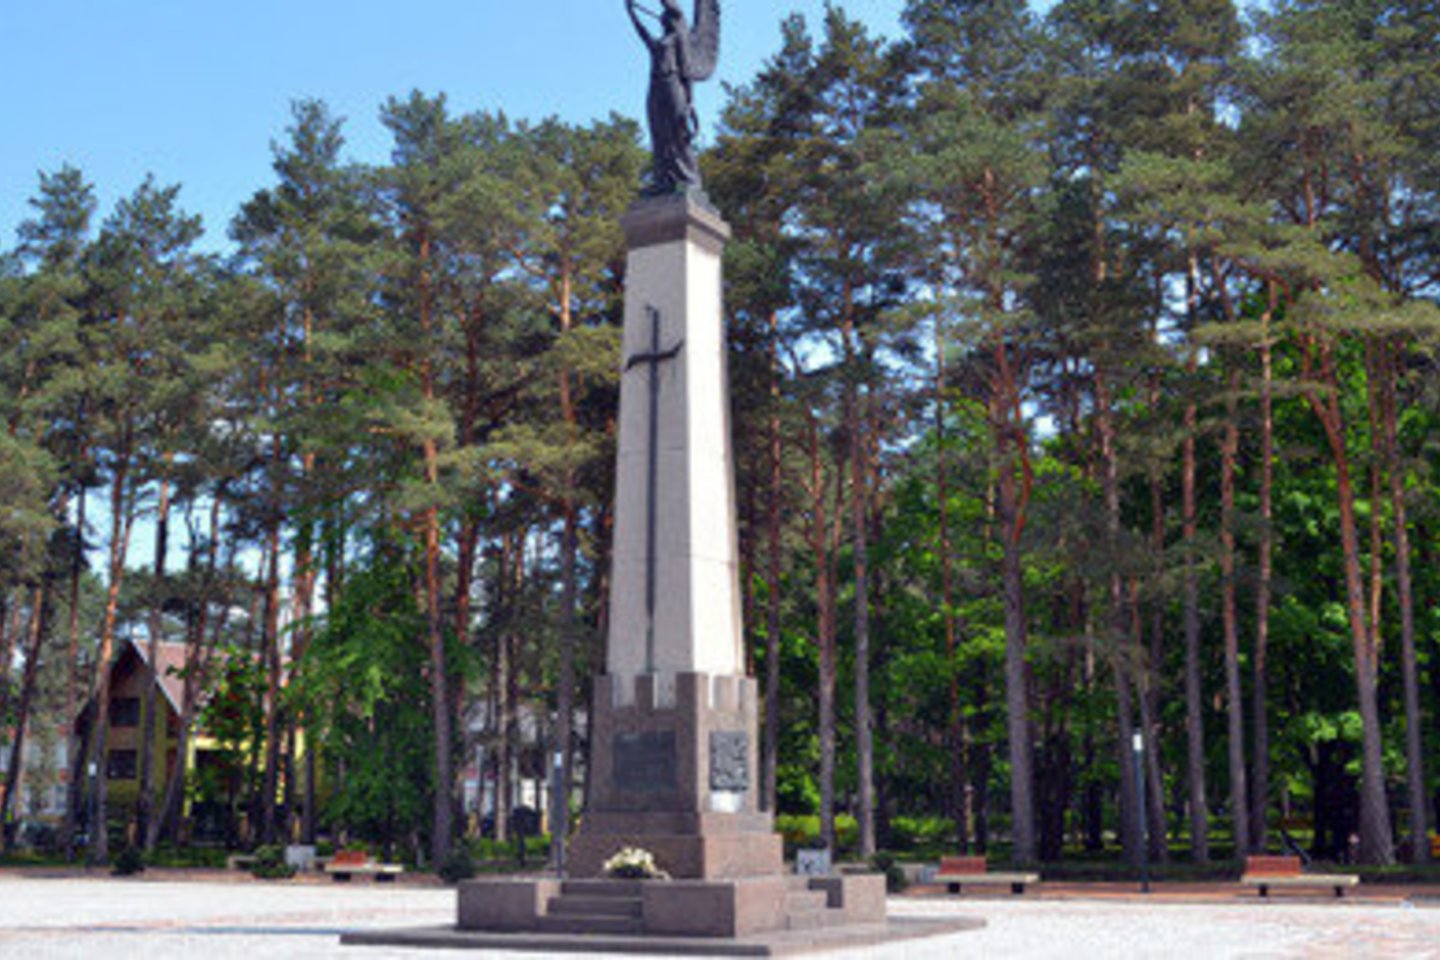  Laisvės statula Alytaus miesto parke.<br> Organizatorių nuotr.